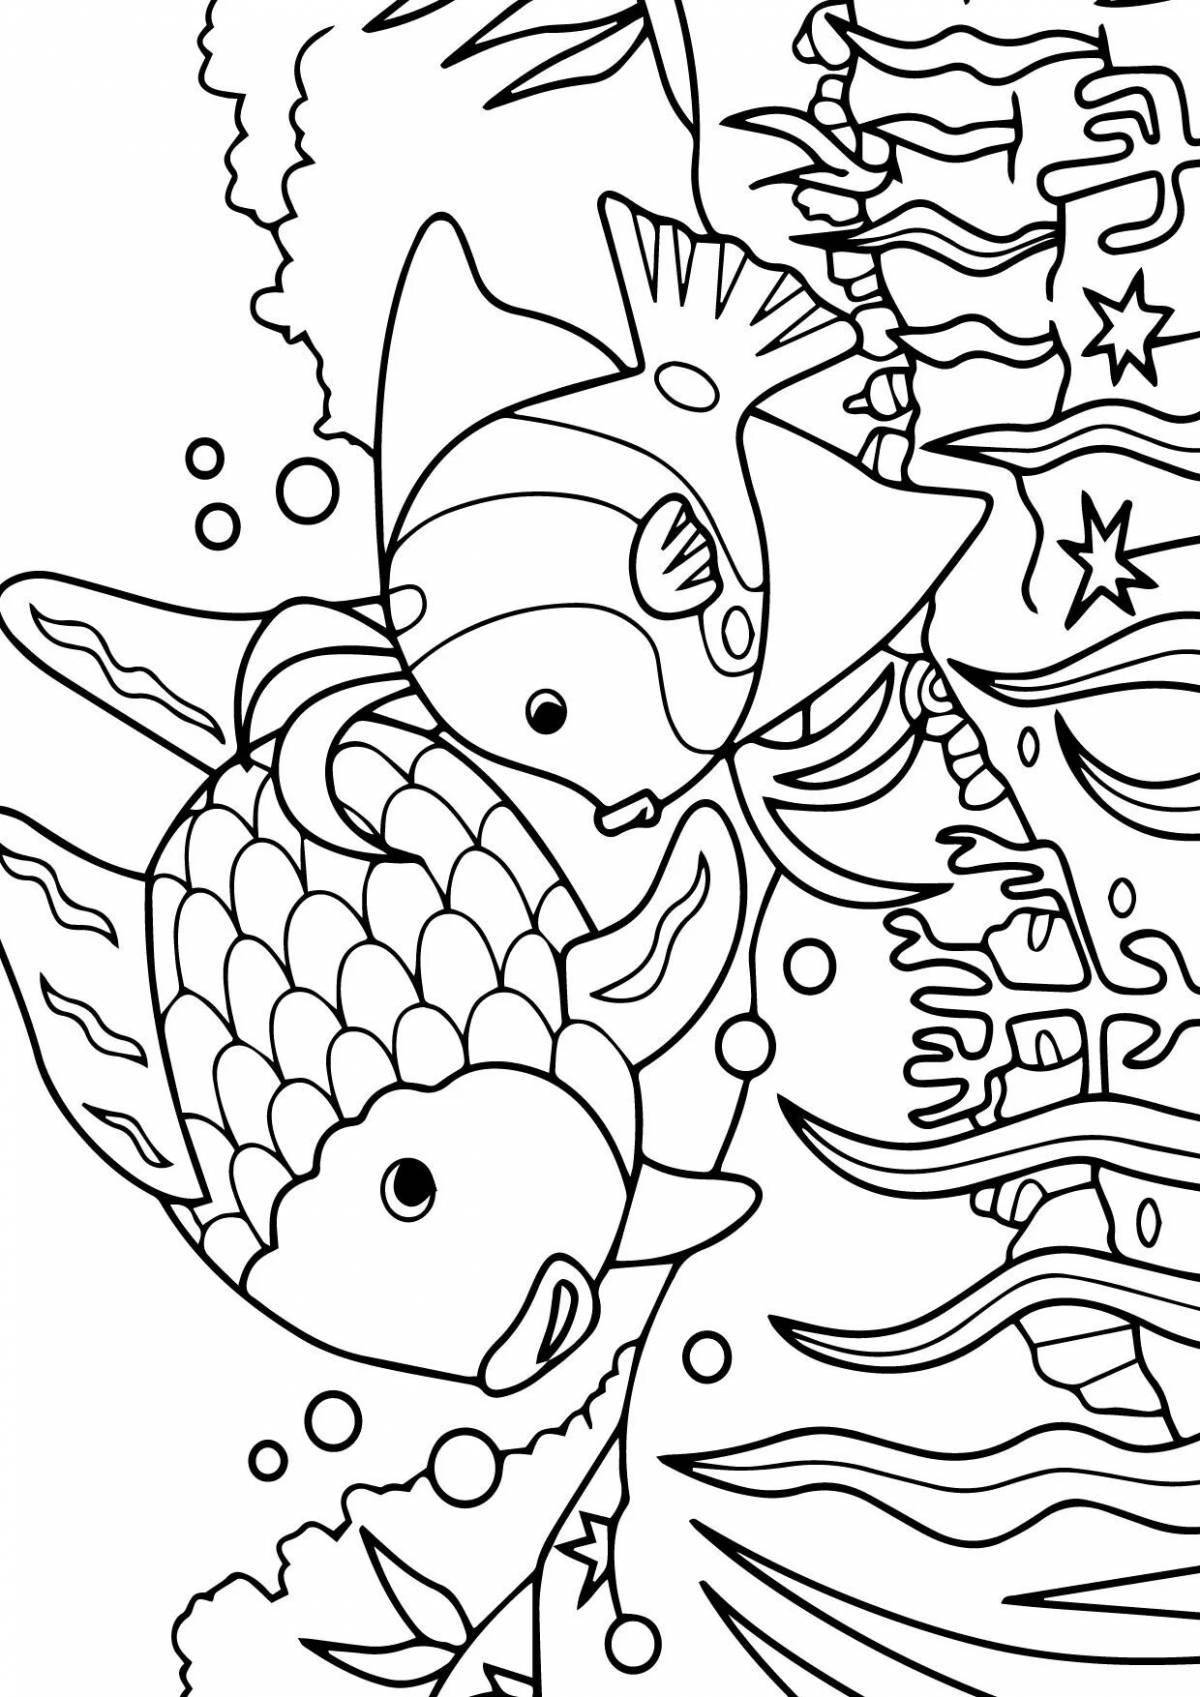 Раскраска мистическая рыба по номерам